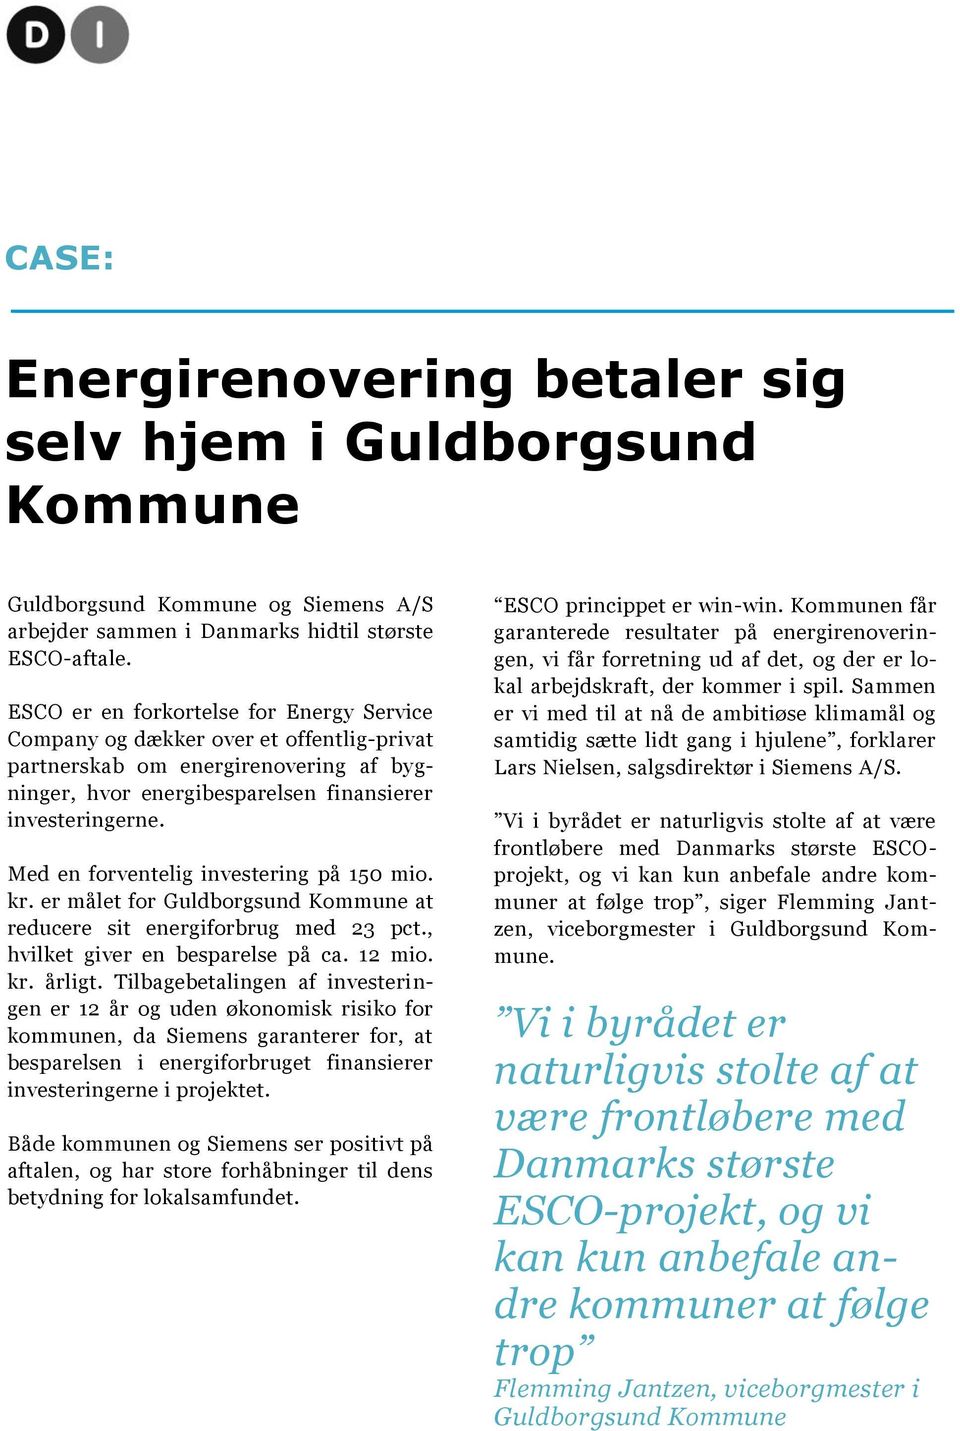 Med en forventelig investering på 150 mio. kr. er målet for Guldborgsund Kommune at reducere sit energiforbrug med 23 pct., hvilket giver en besparelse på ca. 12 mio. kr. årligt.